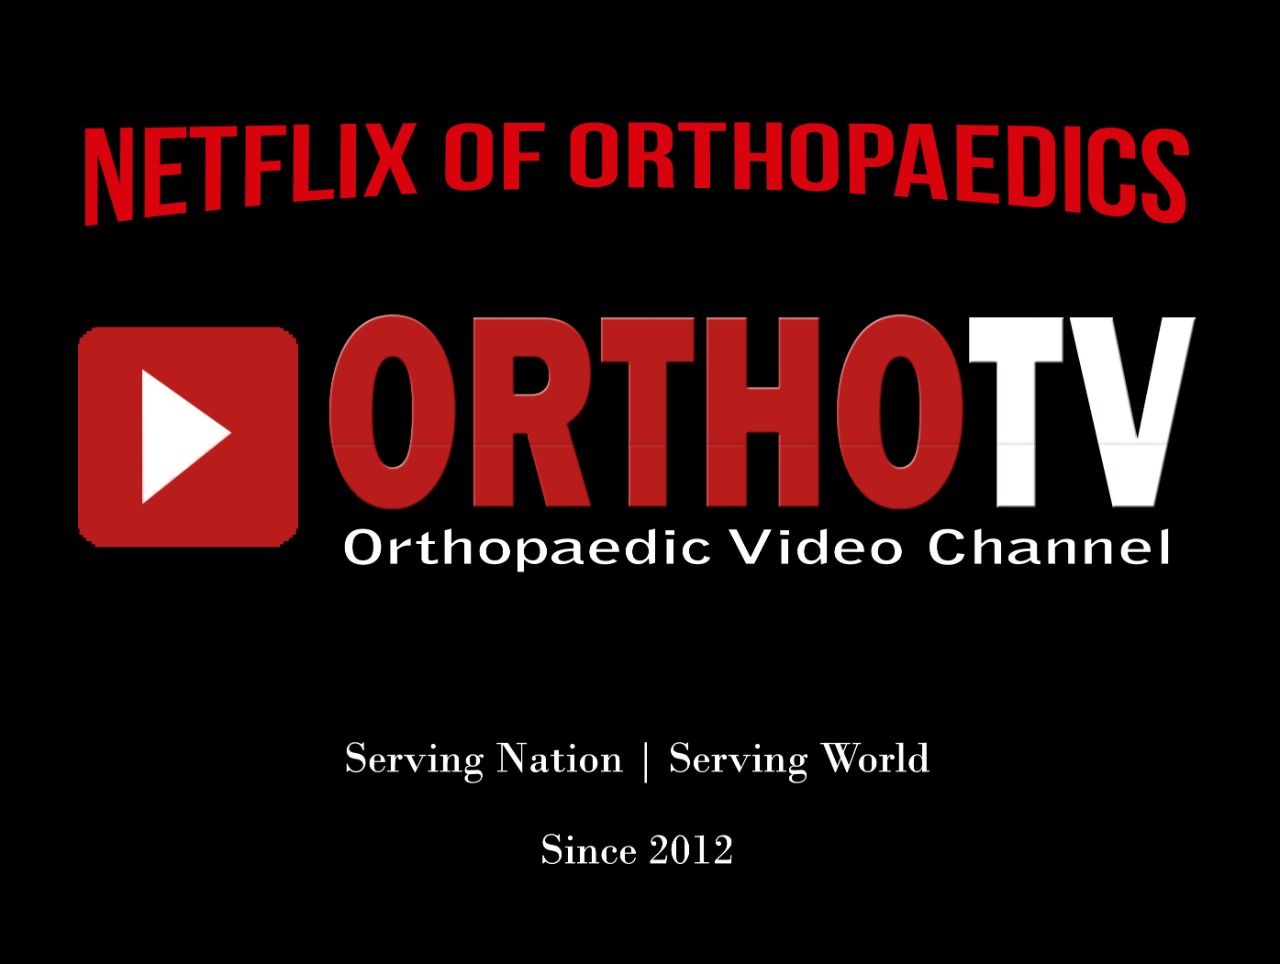 OrthoTV Netflix of Orthopaedics